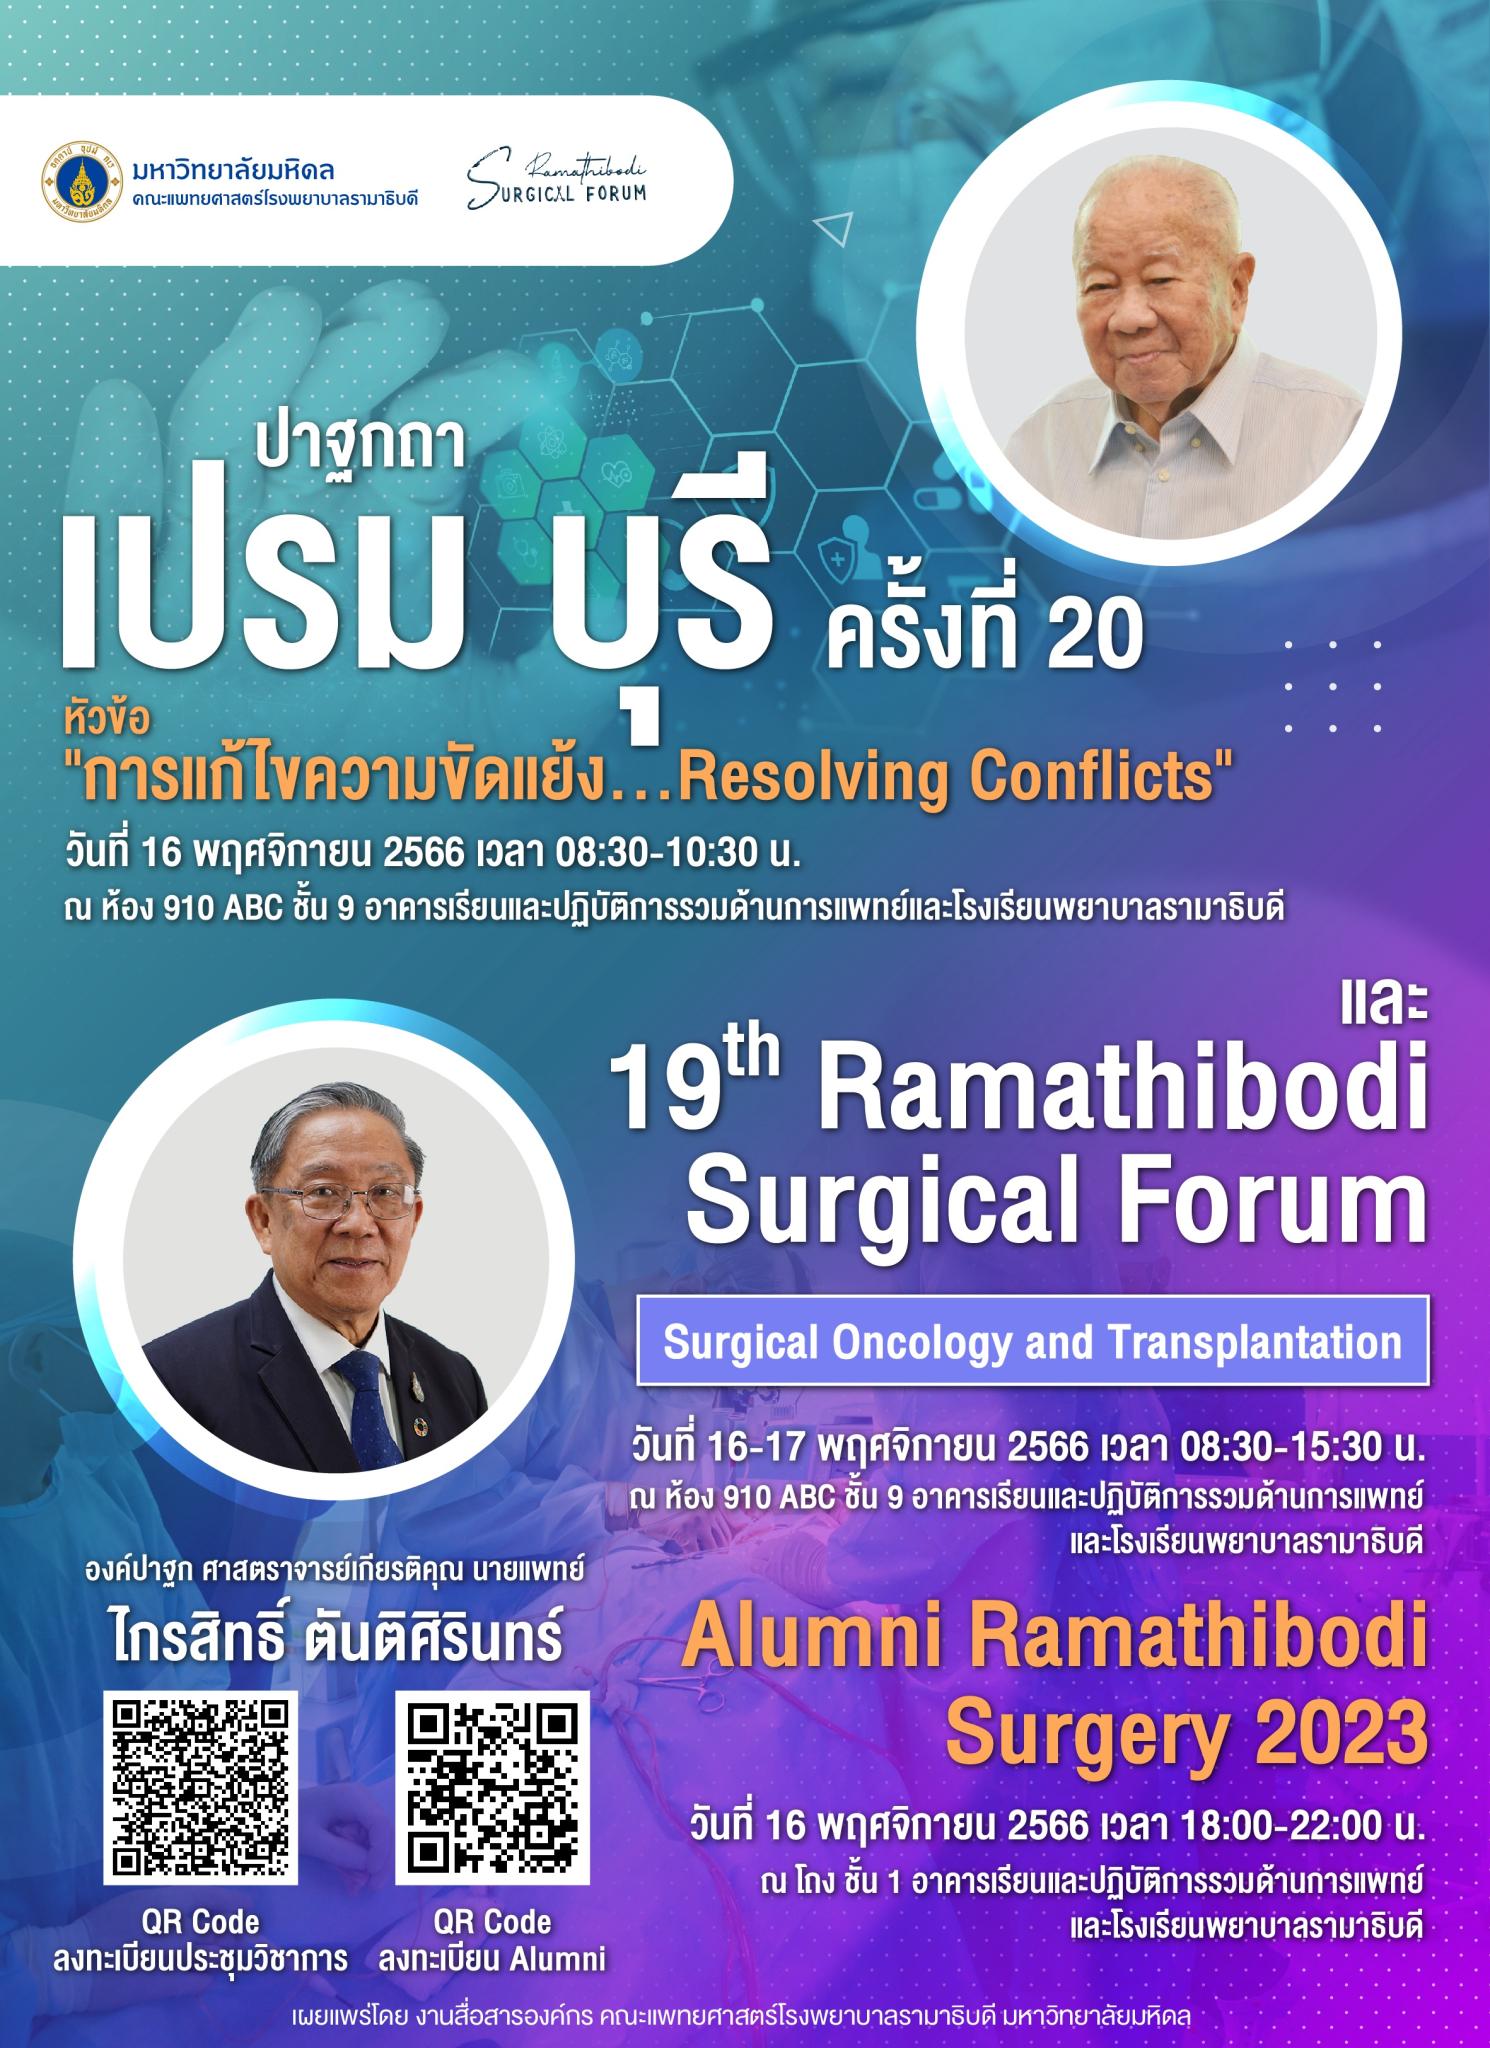 ปาฐกถาเปรม บุรี ครั้งที่ 20 หัวข้อ “การแก้ไขความขัดแย้ง...Resolving Conflicts” และ 19th Ramathibodi Surgical Forum Surgical Oncology and Transplantation Alumni Ramathibodi Surgery 2023